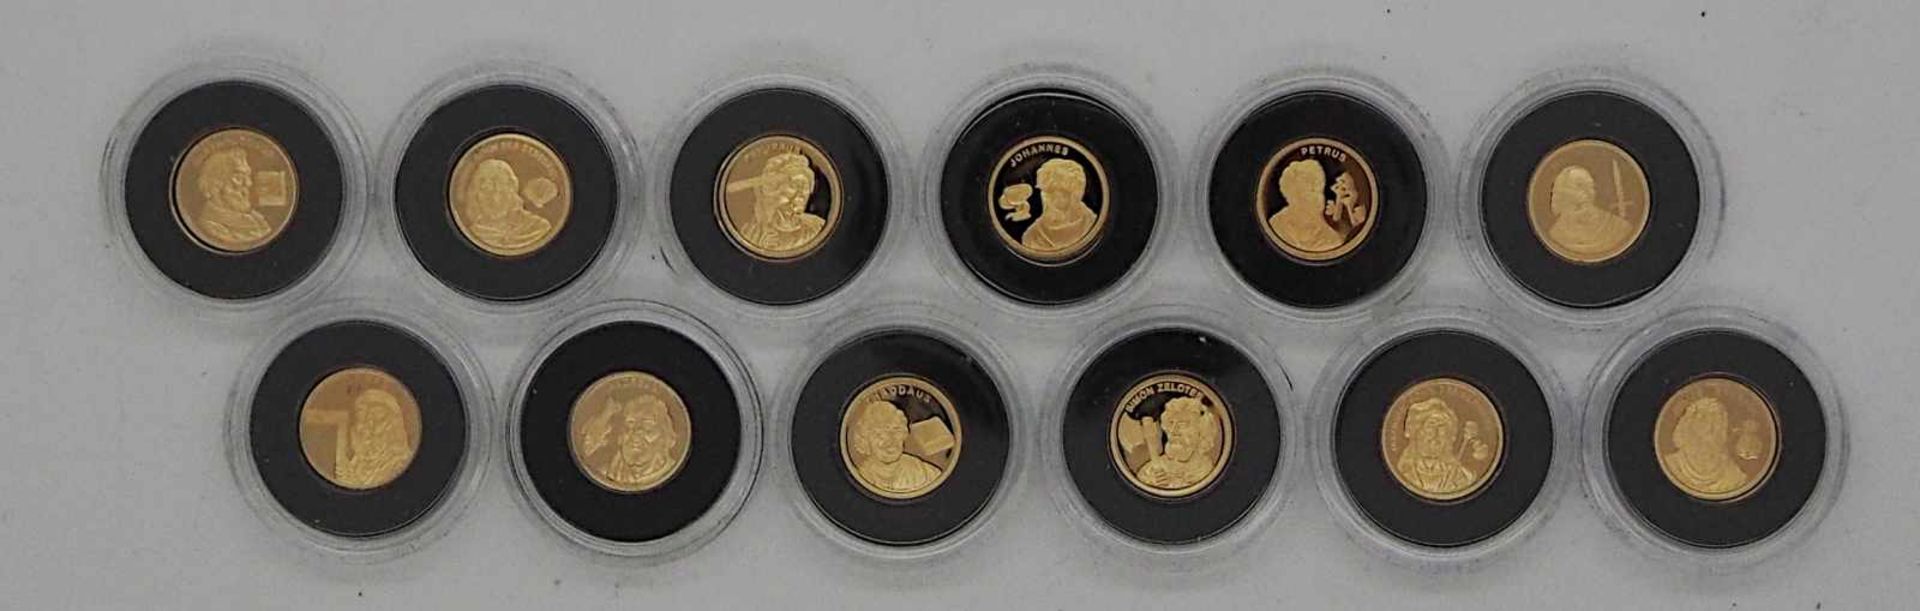 1 Konvolut Münzen/Medaillen GG 14ct., Metall u.a."Die 12 Apostel" uvm., Euro-Premiums - Bild 2 aus 5